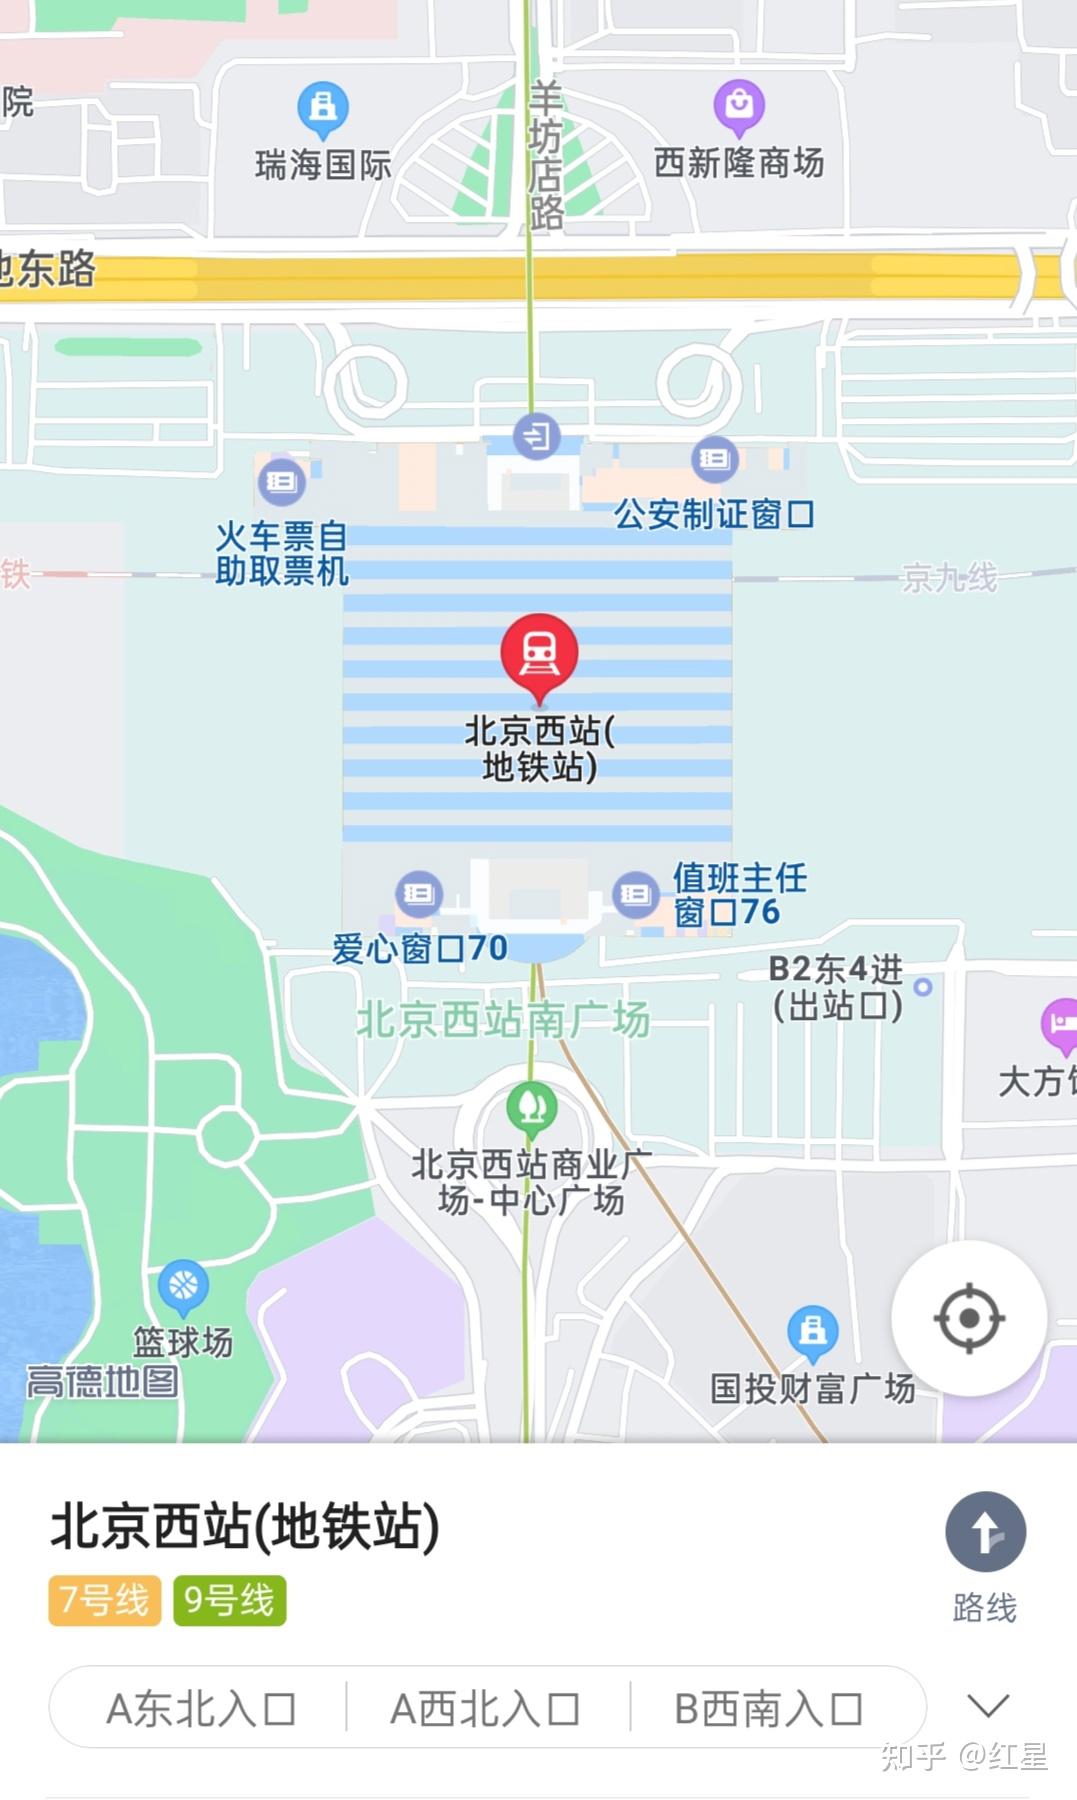 北京西站详细地图图片